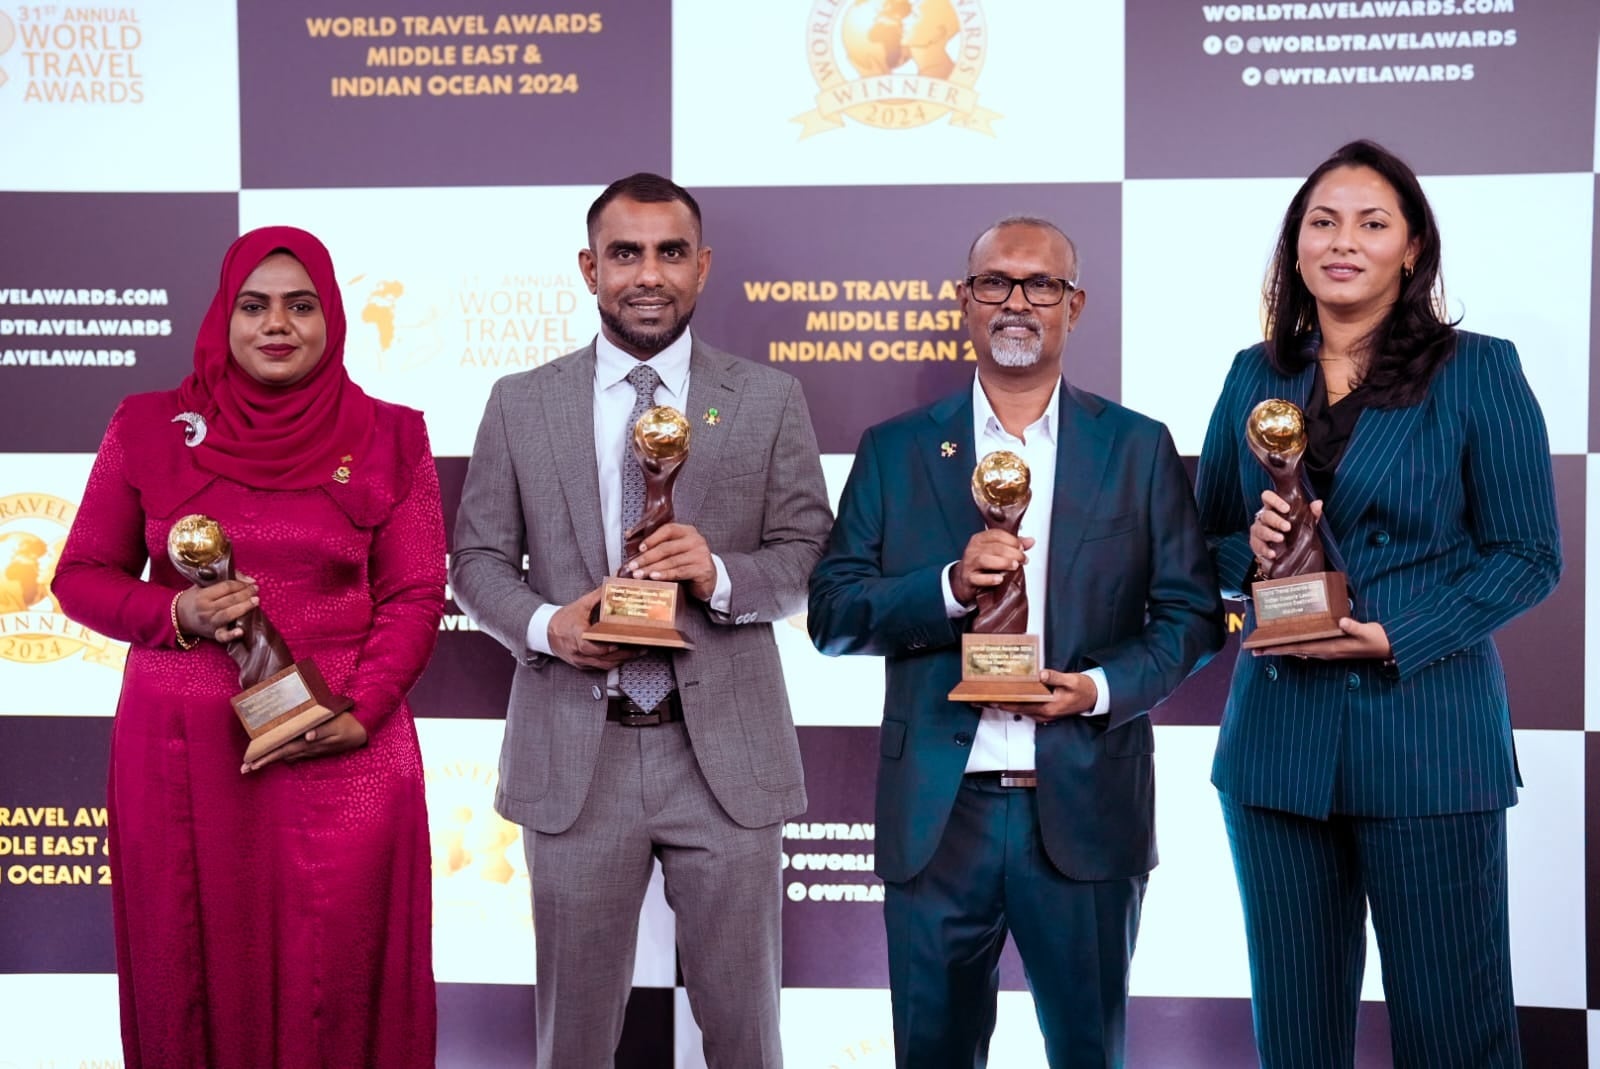 「ワールド・トラベル・アワード2024」インド洋部門にて、モルディブが5年連続で「リーディング・デスティネーション」を受賞